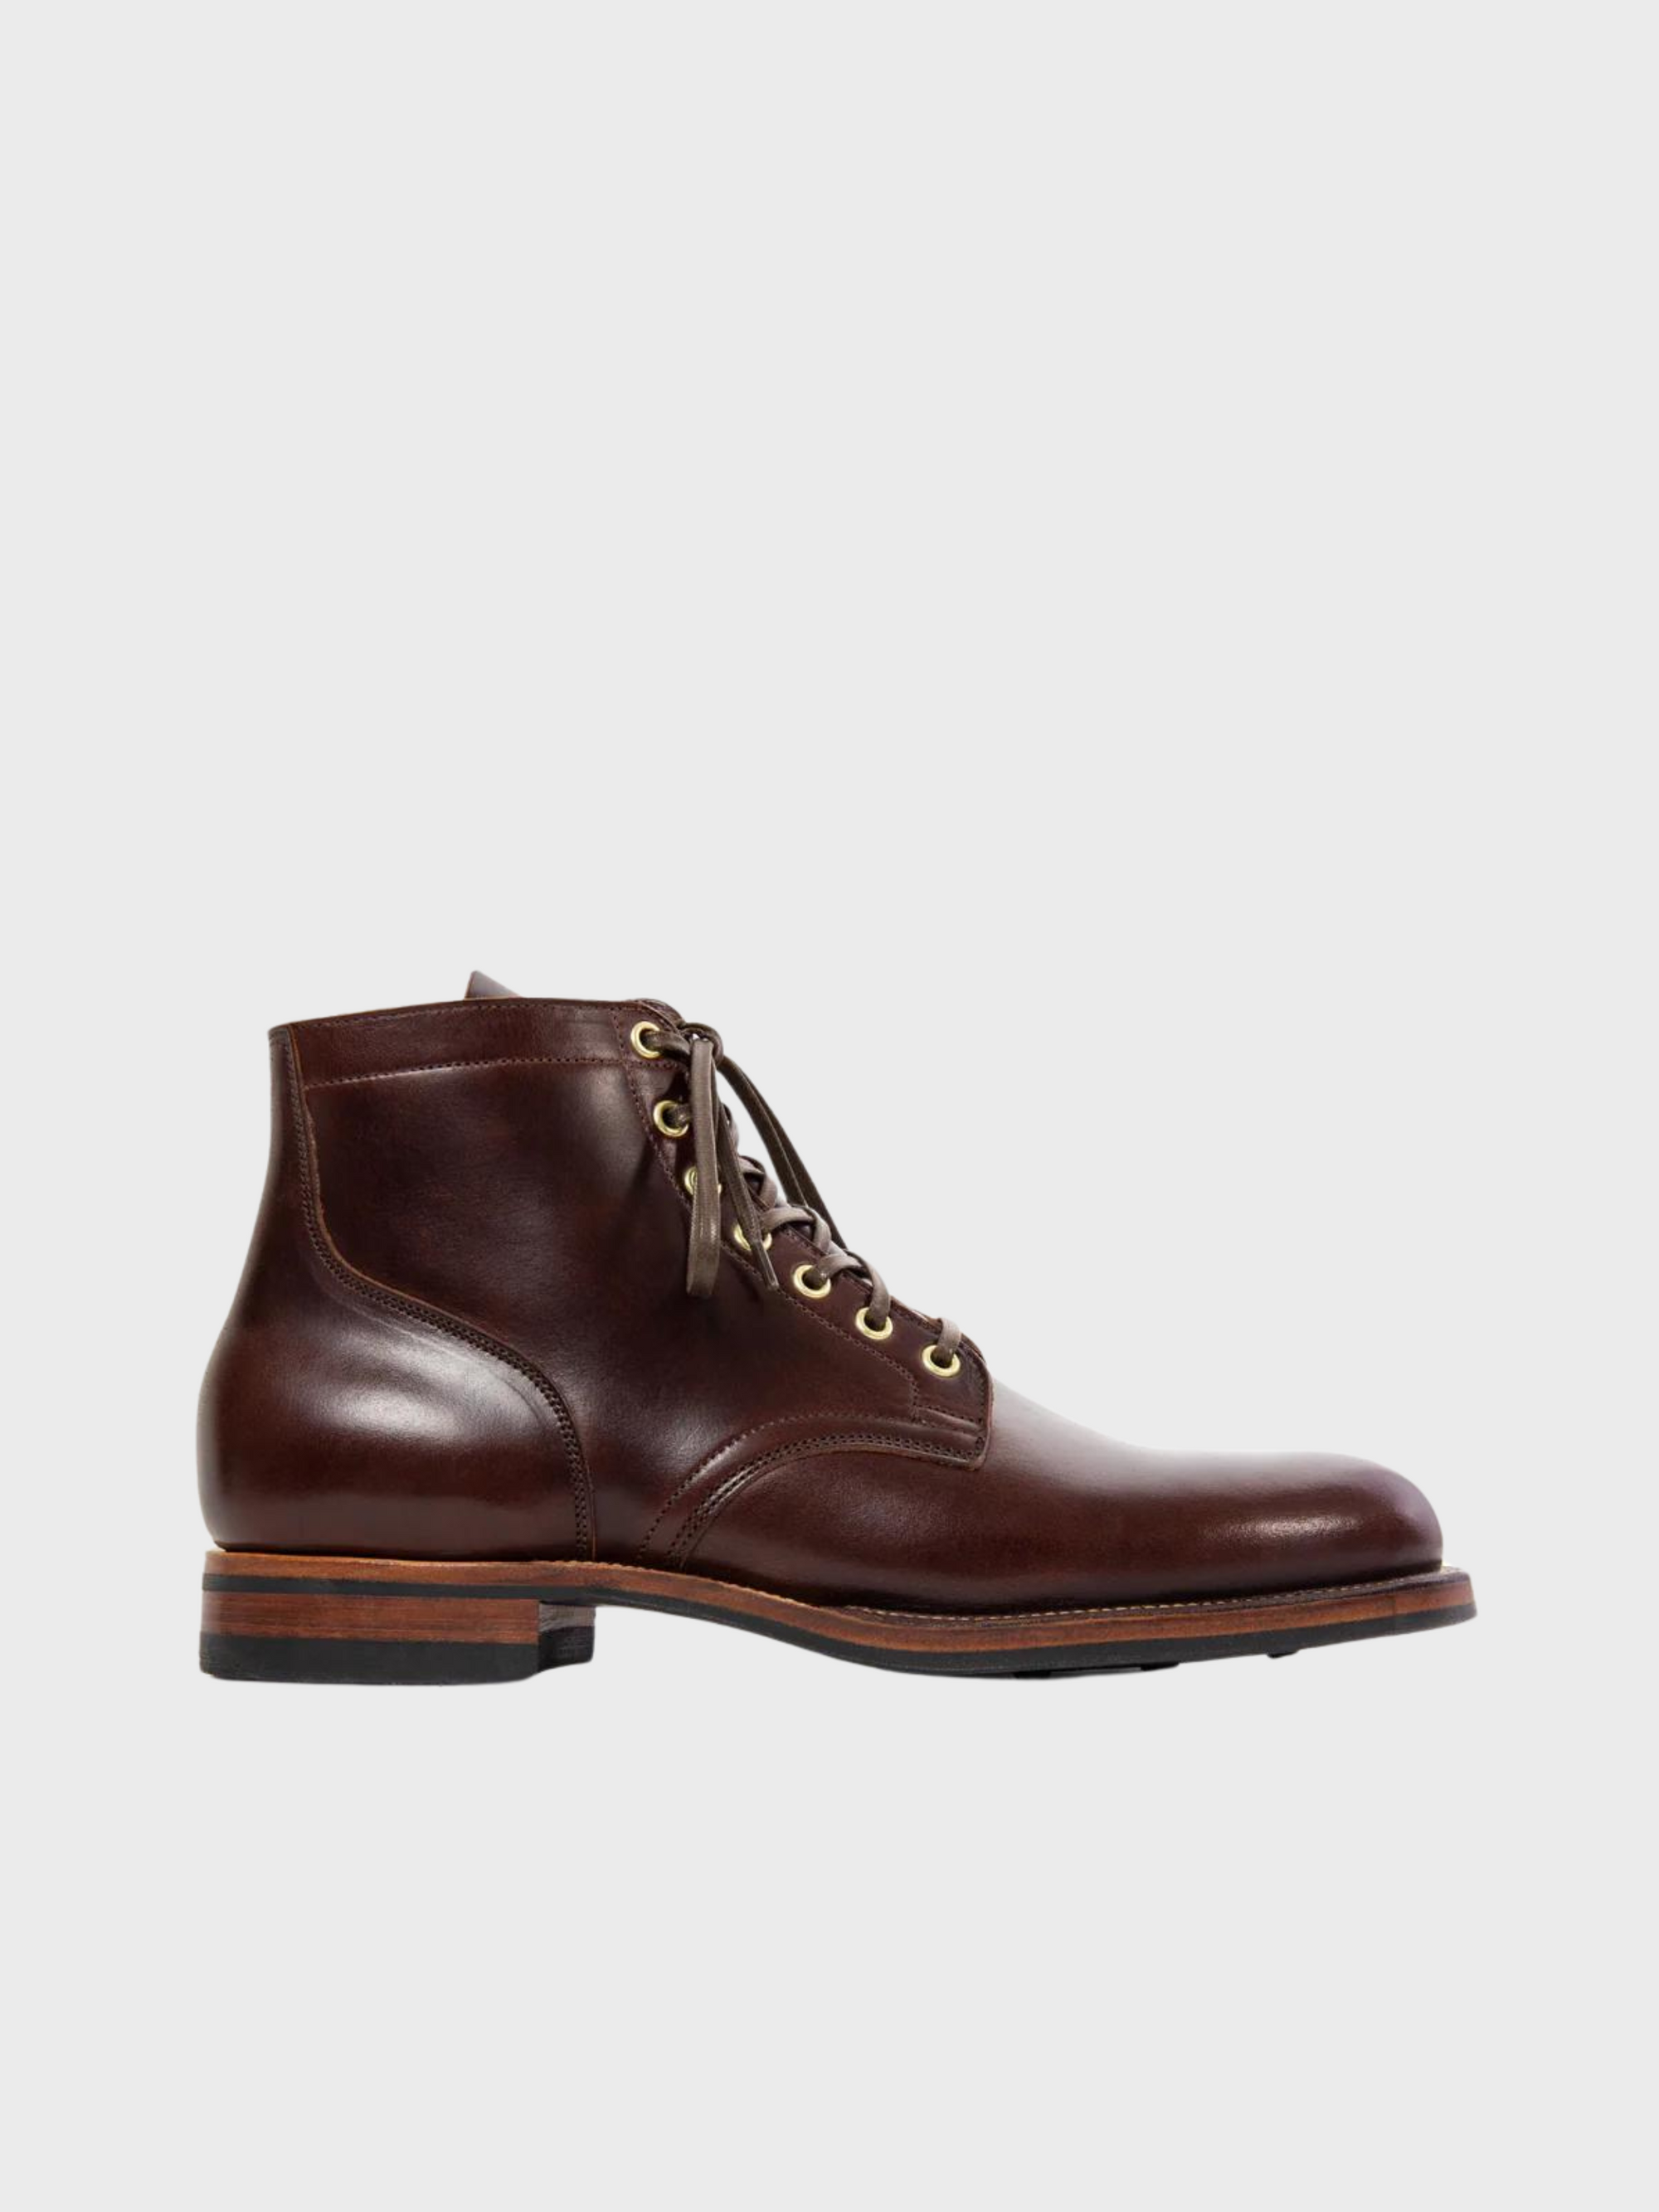 Viberg CORE - Service Boot Plain Toe Brown CXL-Men&#39;s Shoes-8-Yaletown-Vancouver-Surrey-Canada